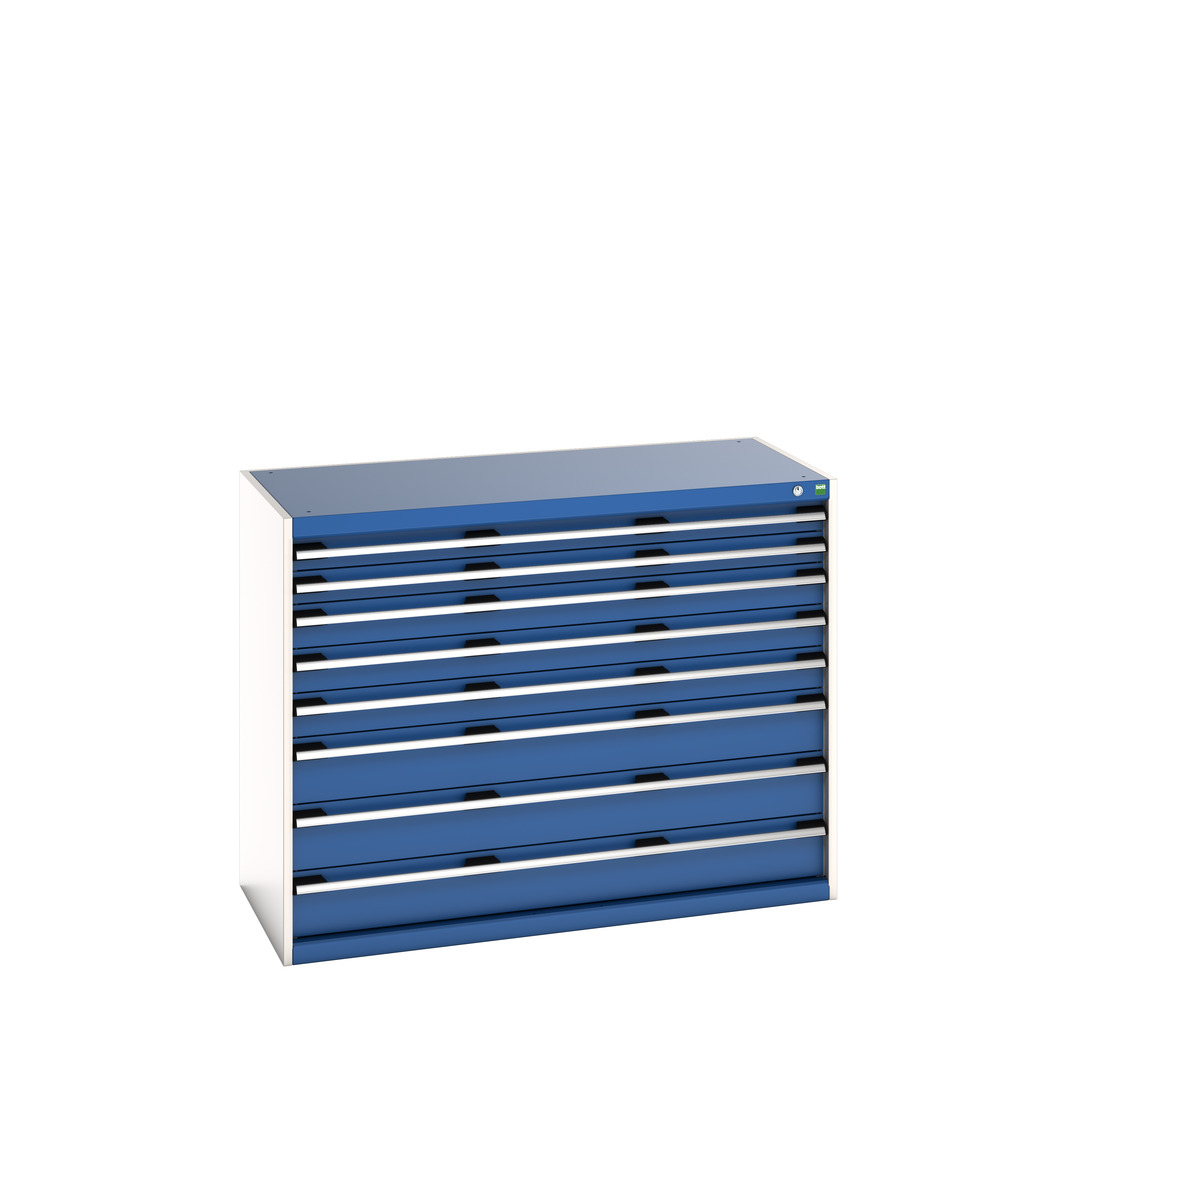 40022154.11V - cubio drawer cabinet